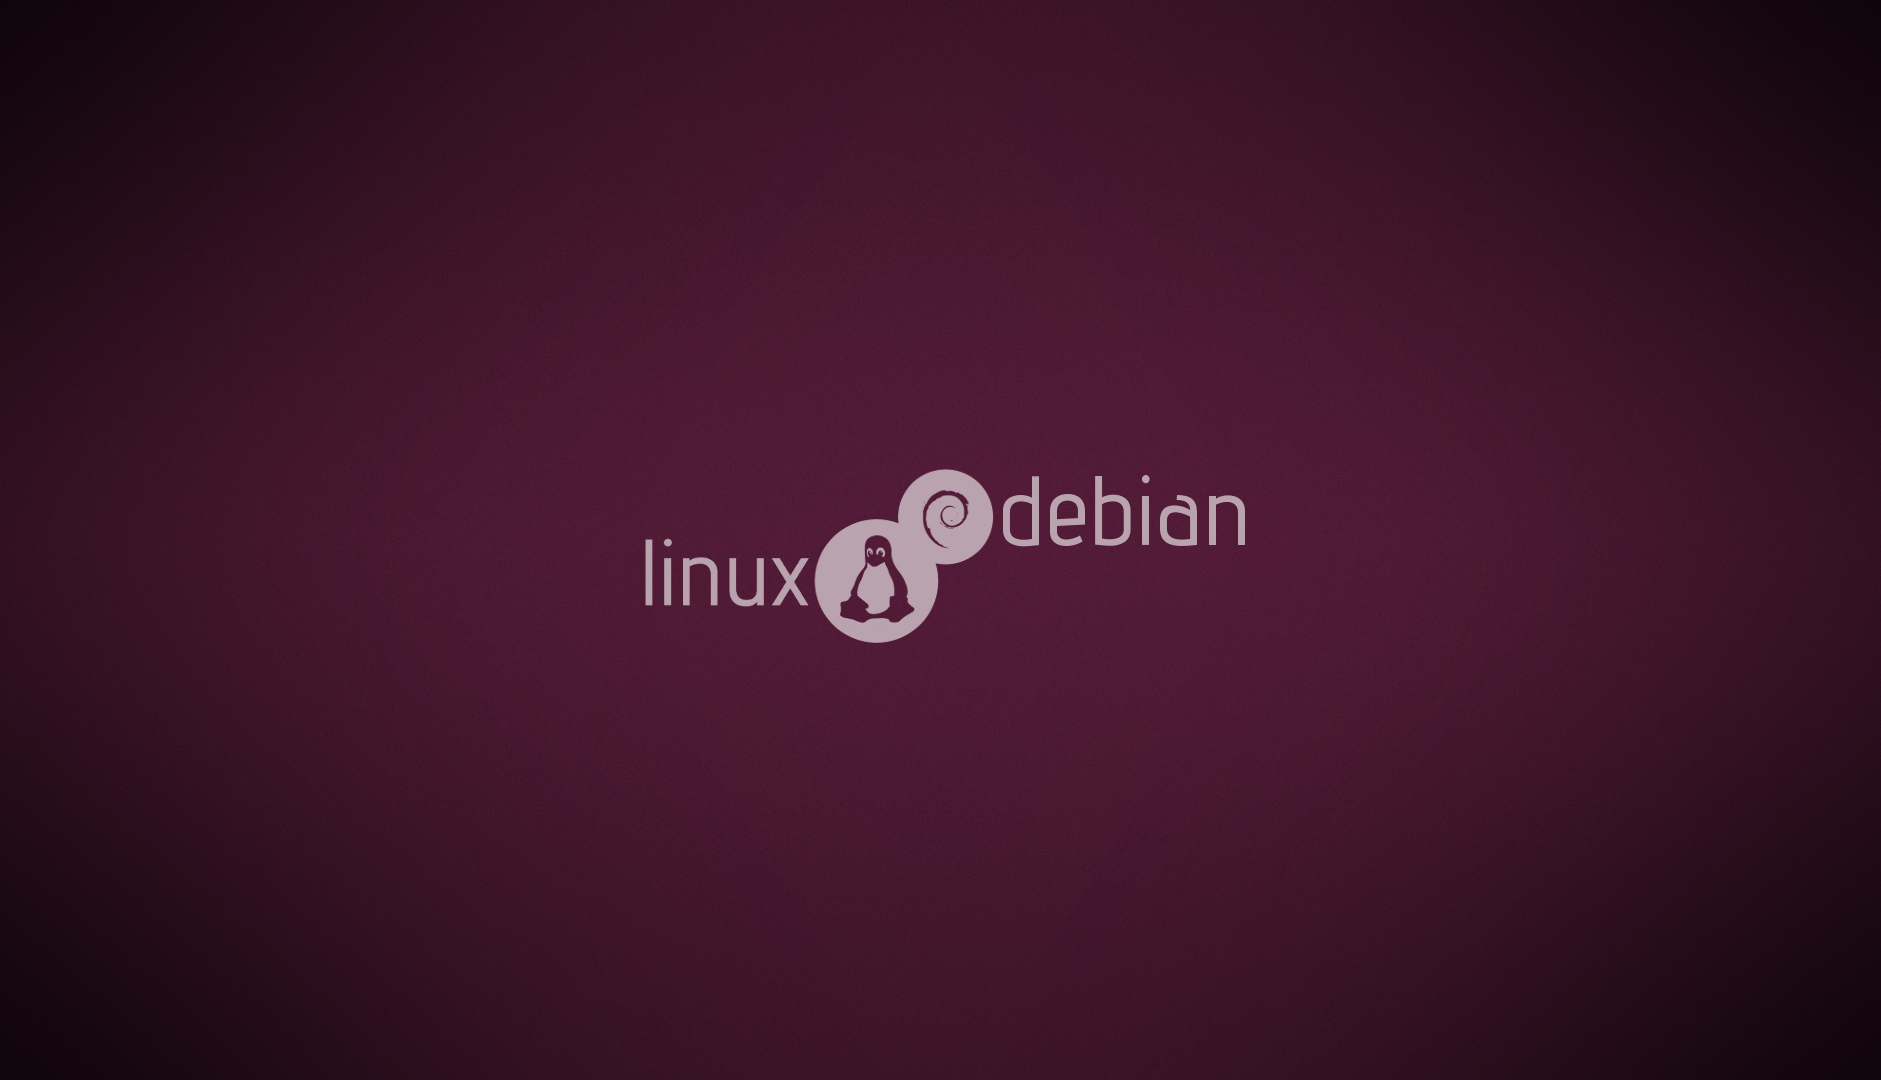 linux debian